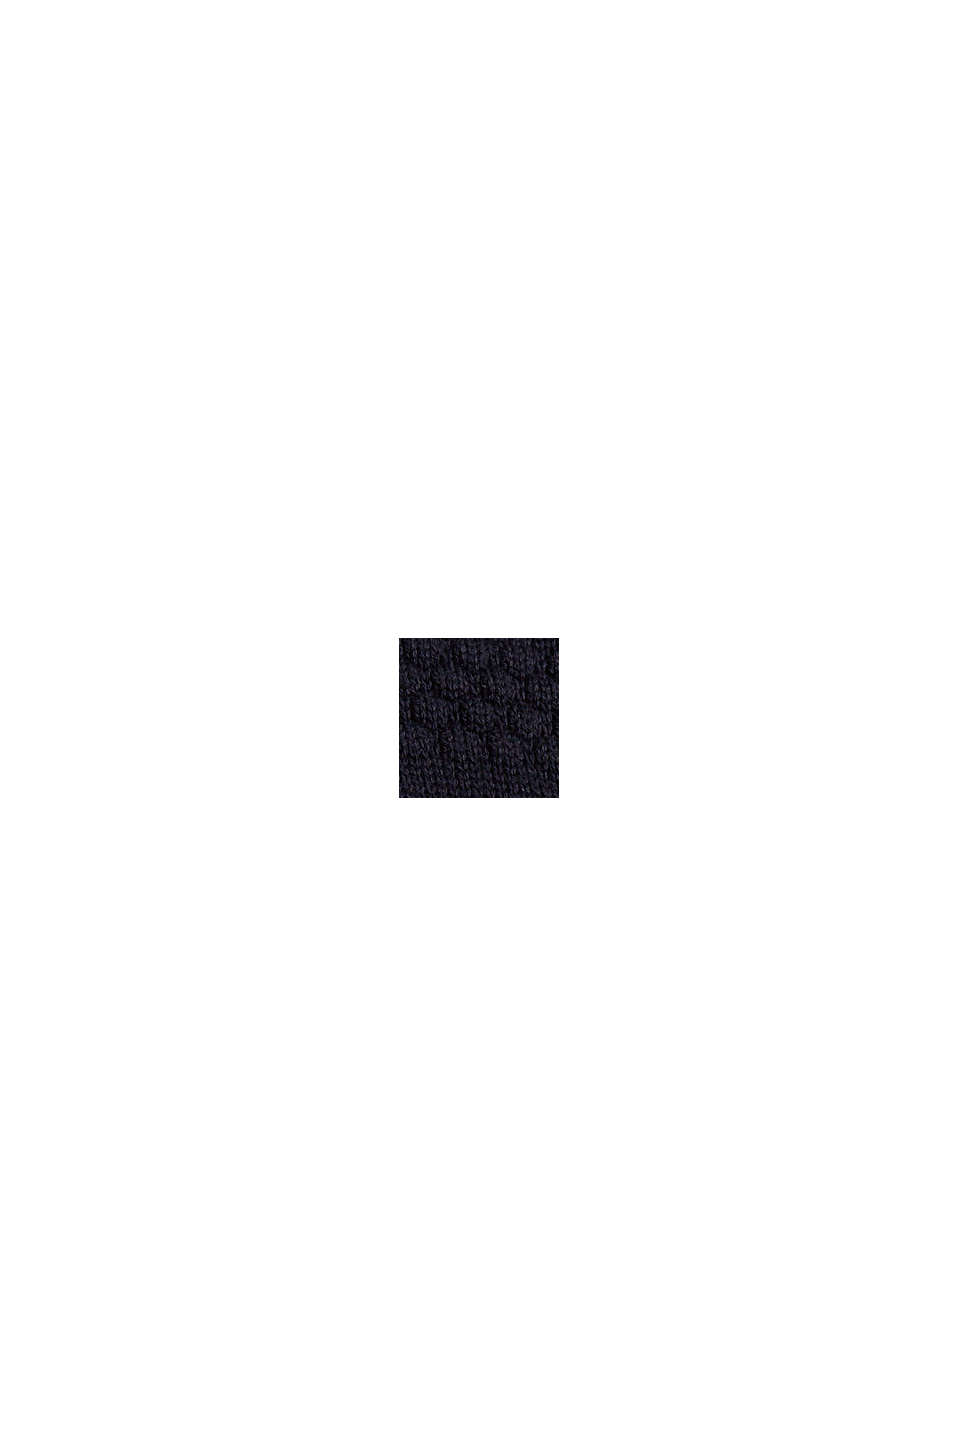 Jersey con cuello de cremallera y diseño de punto texturizado, algodón ecológico, NAVY, swatch